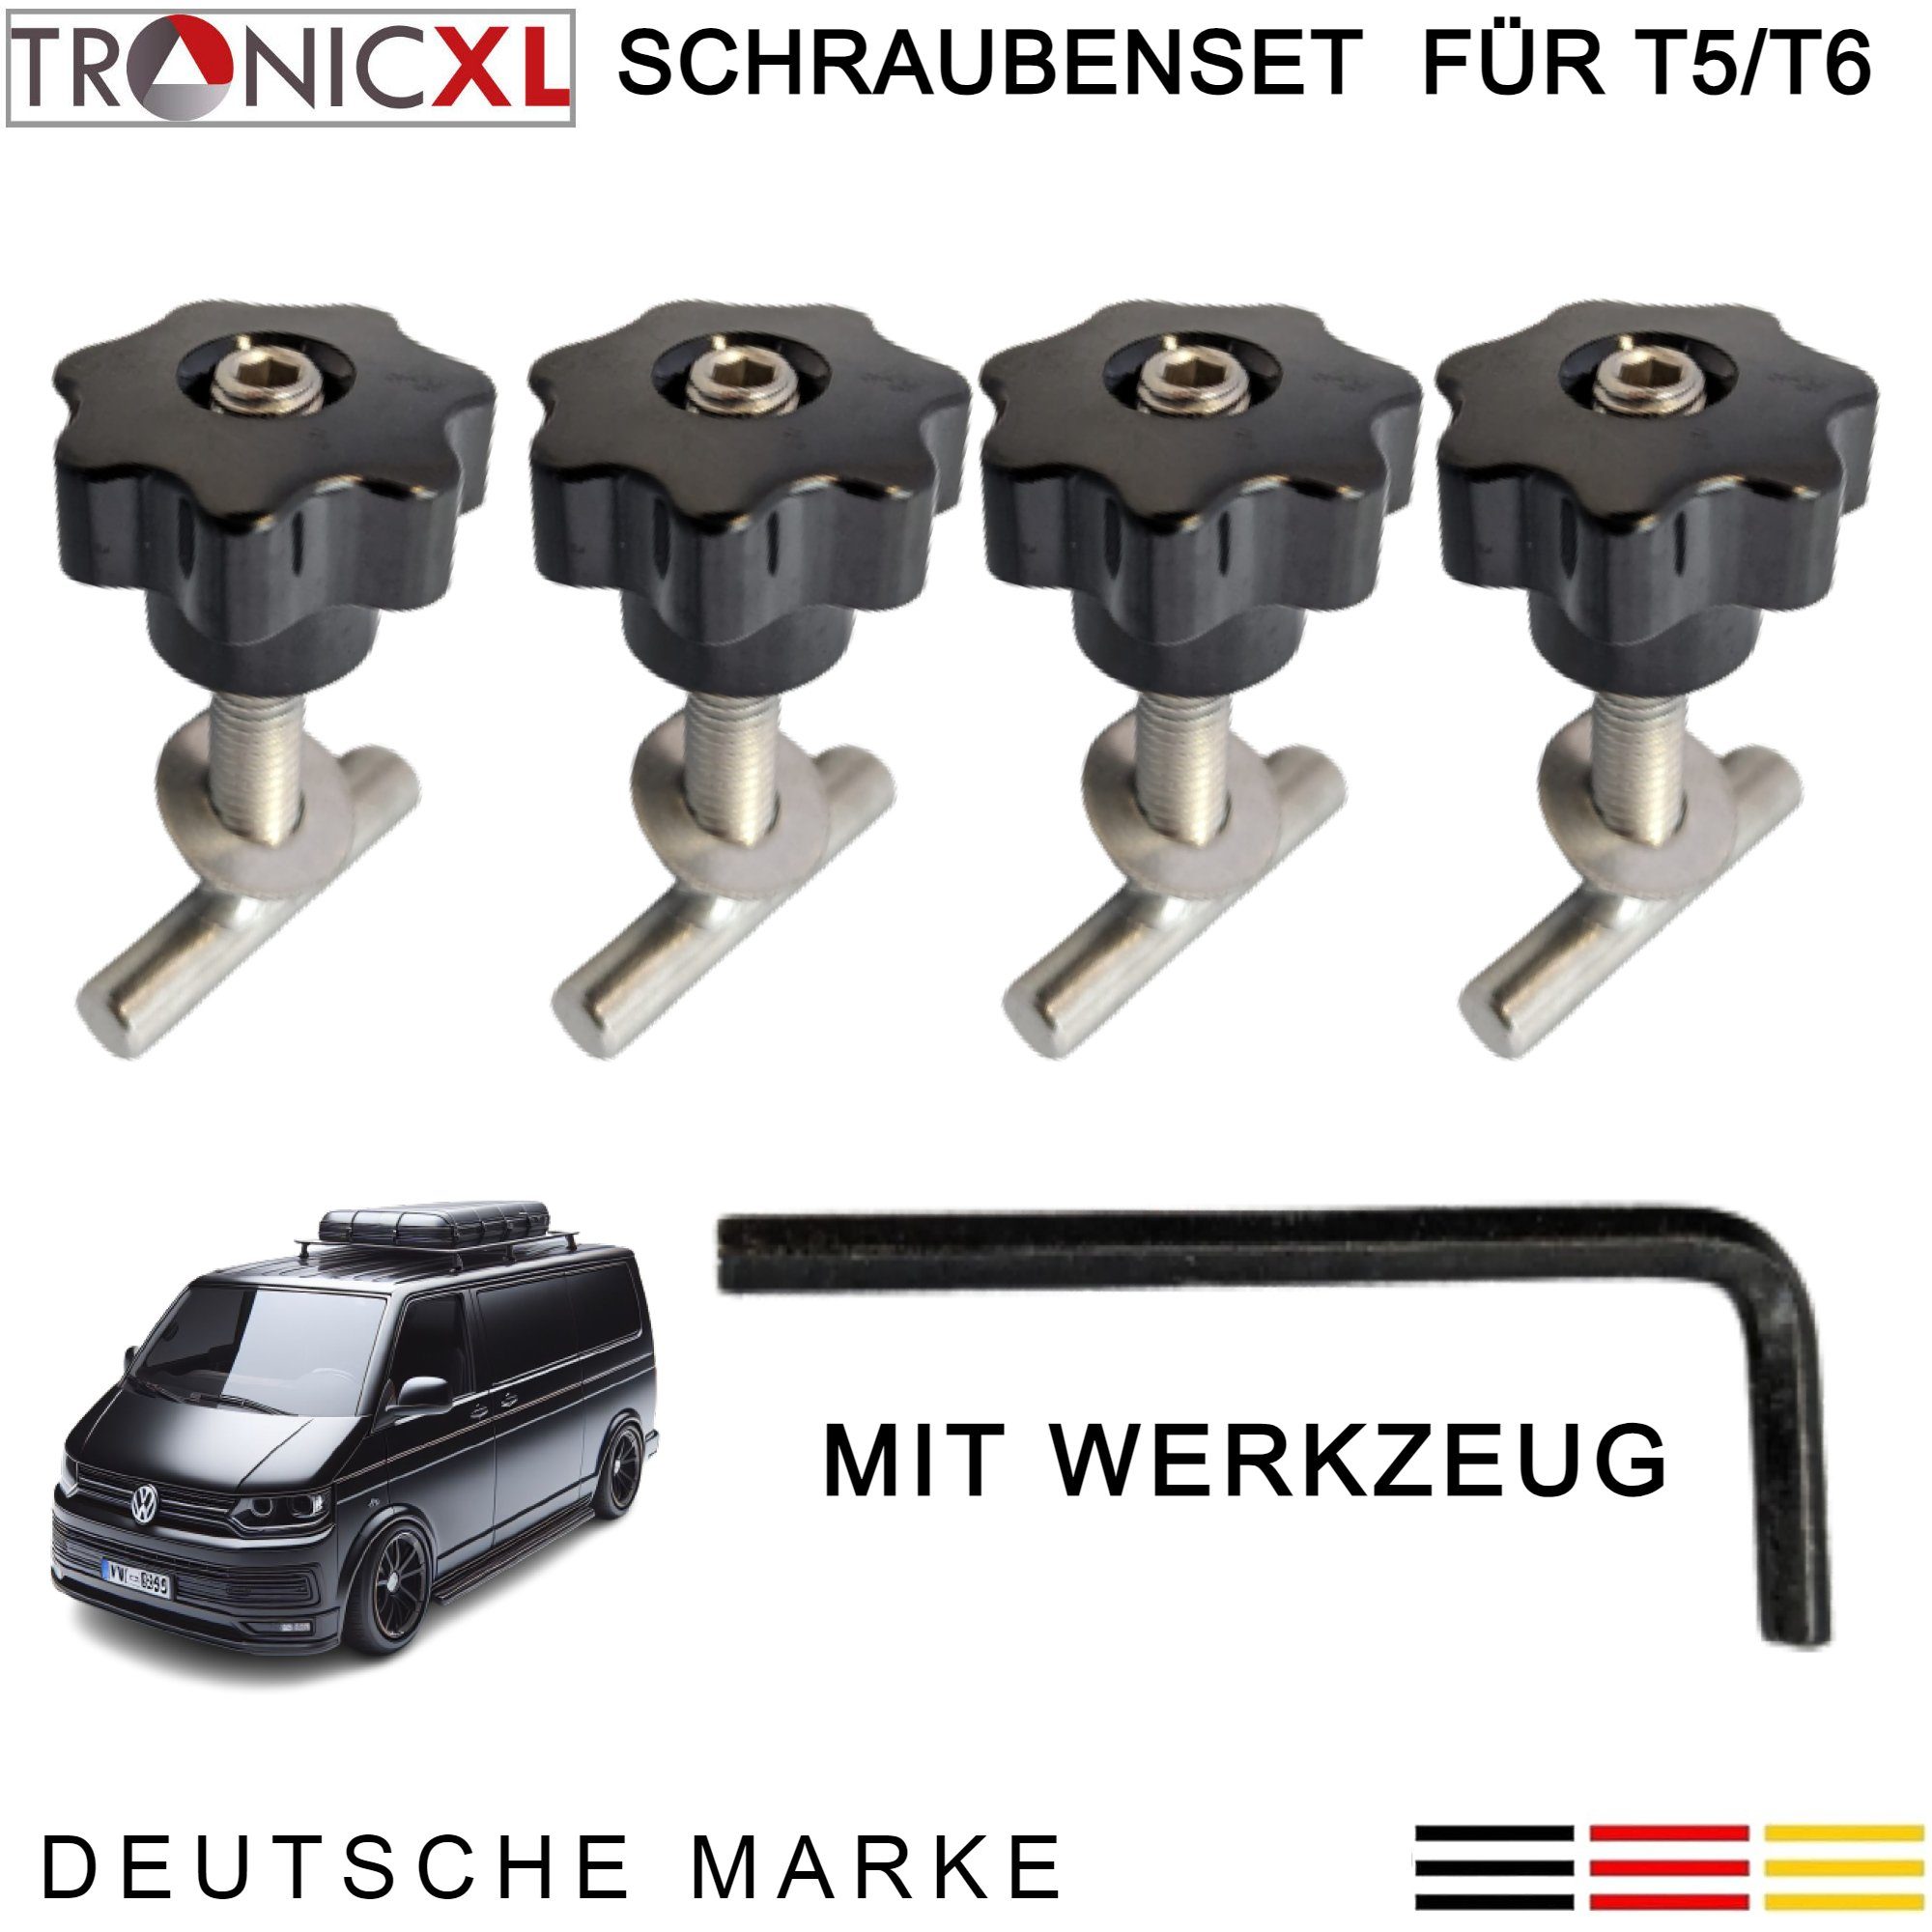 TronicXL Ladekantenschutz Befestigungsschrauben für VW BUS T5 T6 Zubehör Multiflexboard Bulli, Zubehör für VW T5, VW T6, Edelstahl